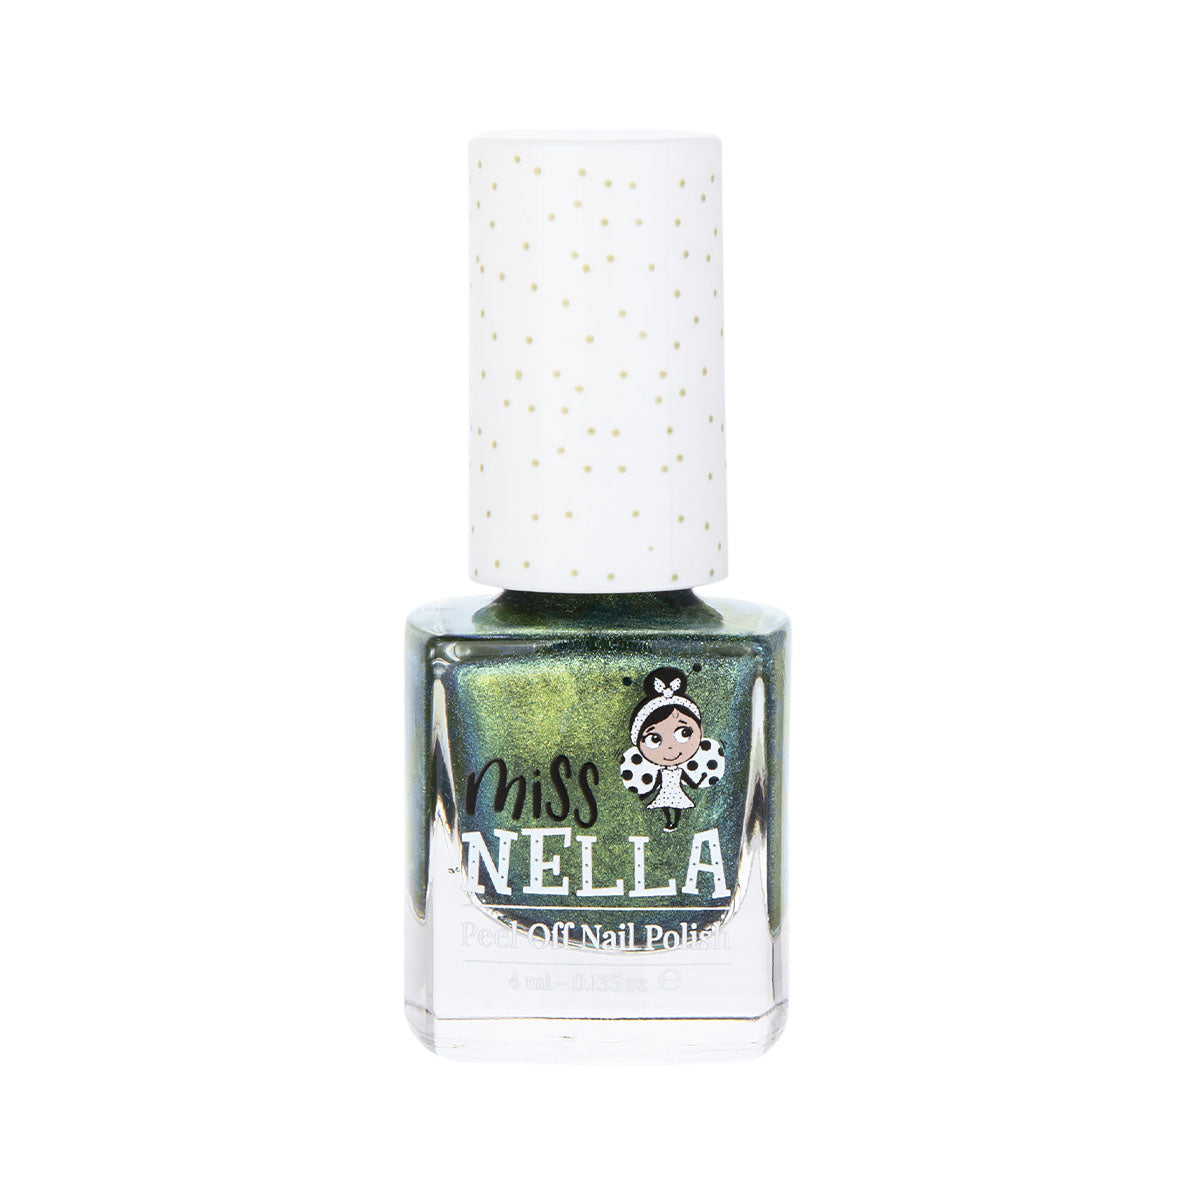 Laat de nageltjes van jouw kindje shinen met de nagellak alien poo van het merk Miss Nella. De peel off nagellak is speciaal ontworpen voor kinderen en is vrij van chemicaliën. In verschillende kleuren. VanZus